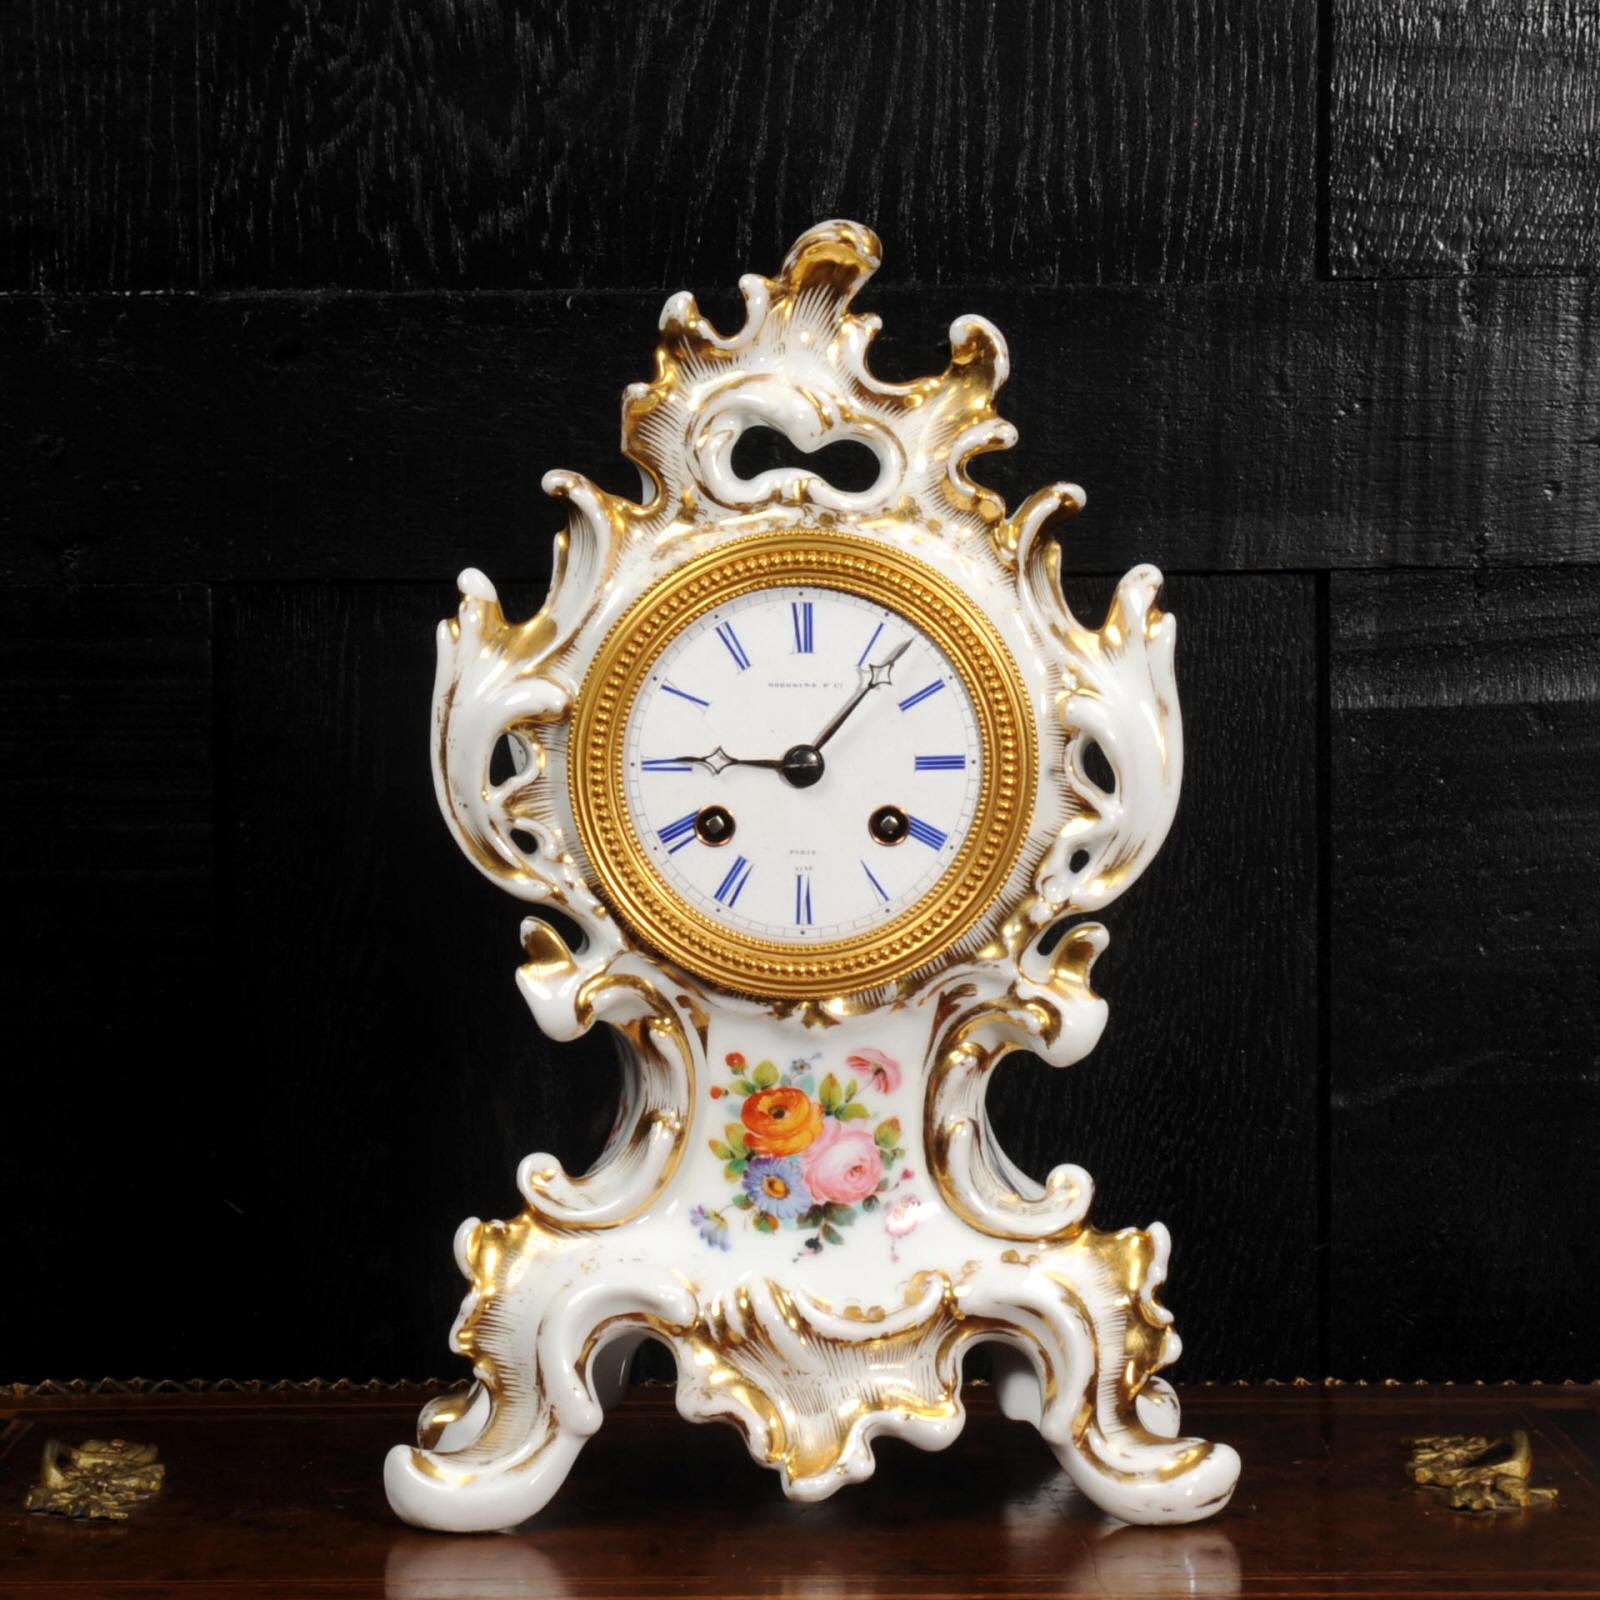 Une très belle horloge en porcelaine de Samuel Marti. Magnifiquement conçu dans le style rococo, avec des volutes et un feuillage fluide. Délicatement décorée de bouquets de fleurs exquis et rehaussée de dorures.

Le cadran est en porcelaine